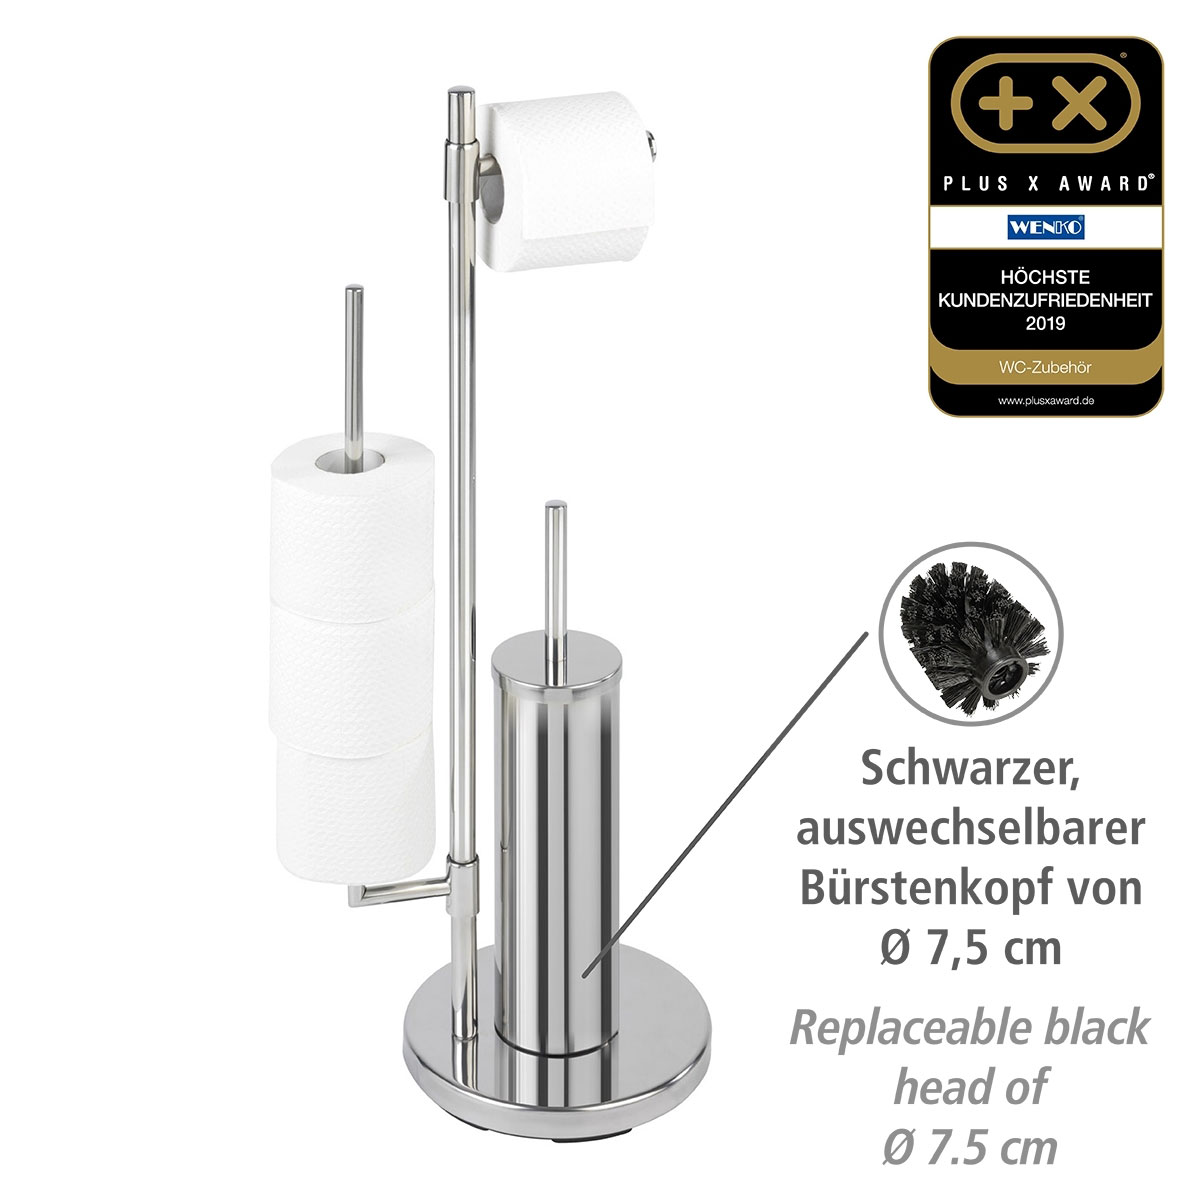 Wenko Stand 514771 rostfrei Edelstahl Universalo Neo Toilettenpapierhalter | integrierter WC-Garnitur WC-Bürstenhalter und